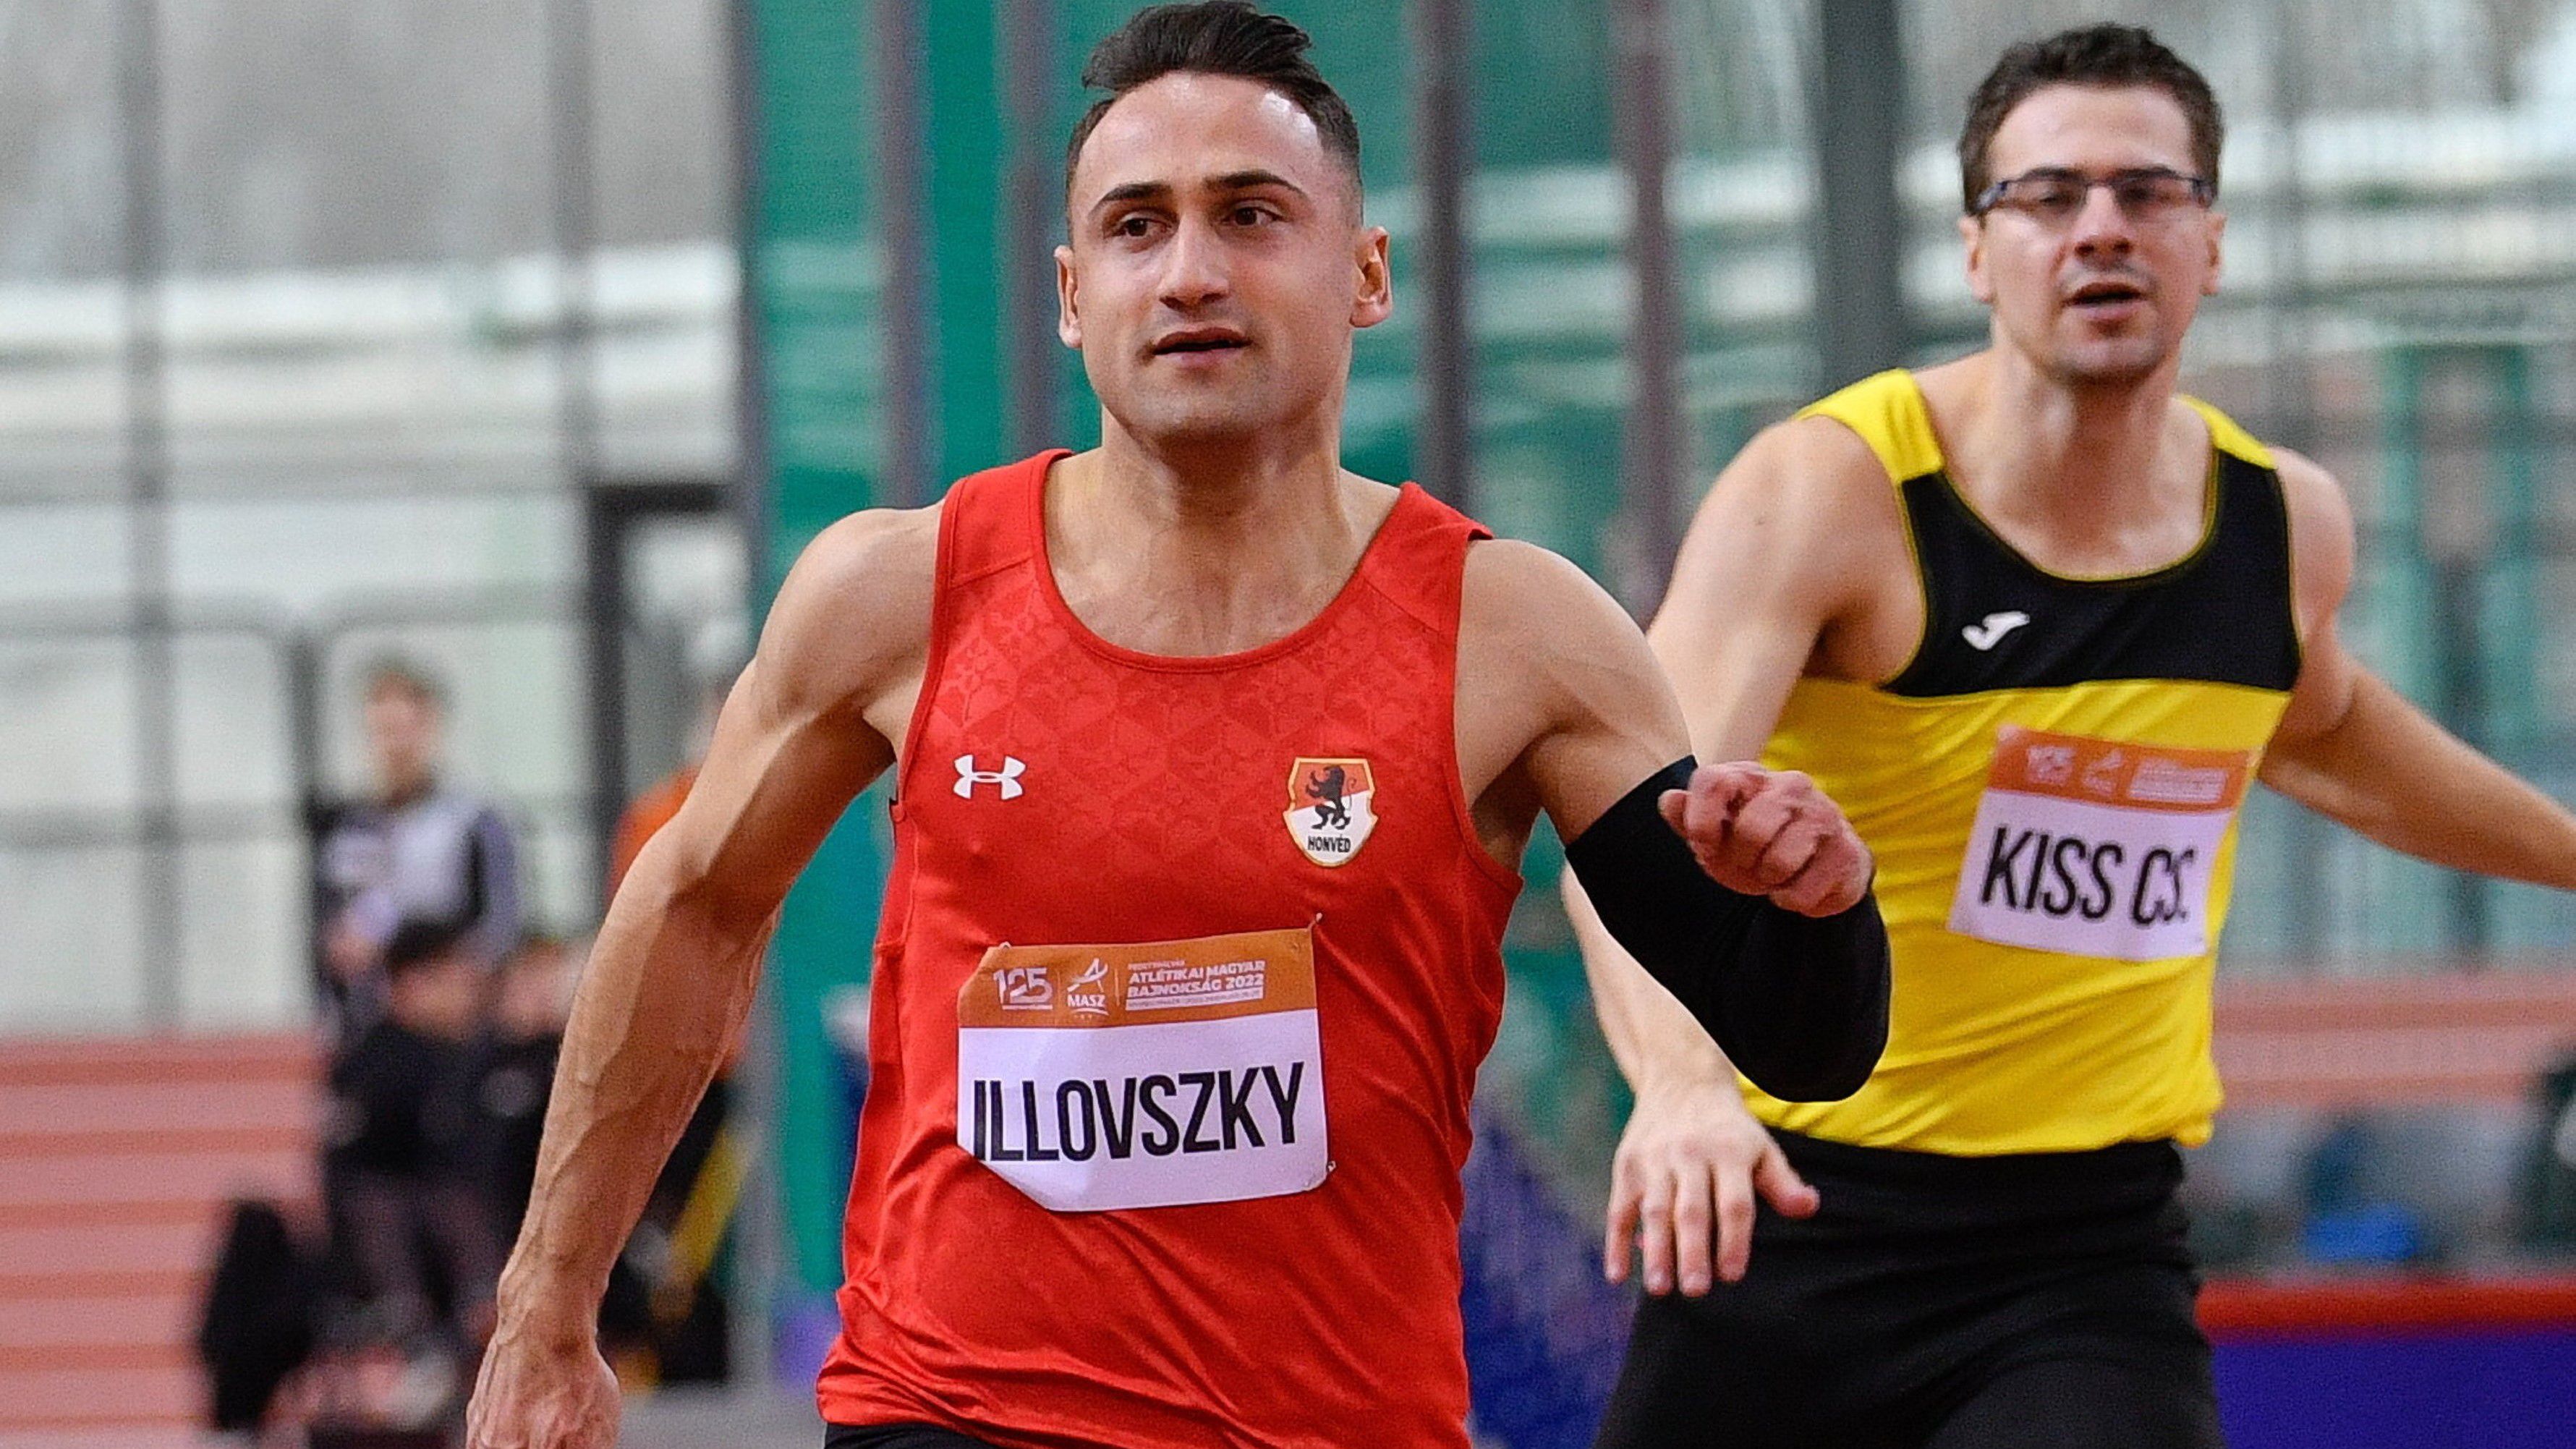 Tizenhat fős a magyar csapat a fedett pályás atlétikai Eb-n; Illovszky Dominik is a csapat tagja